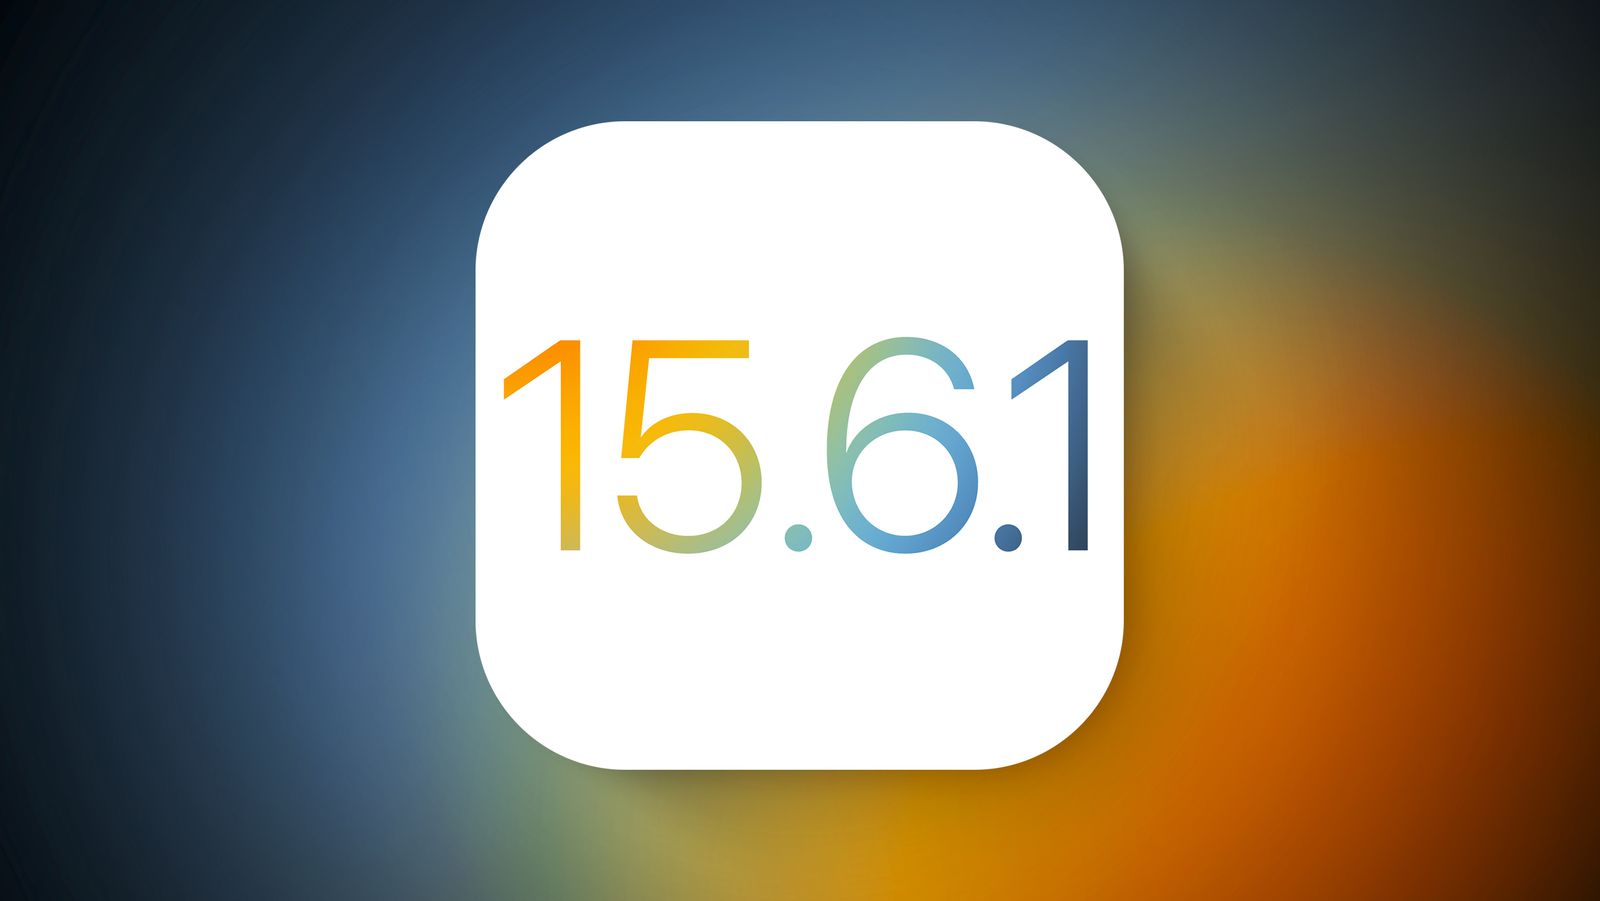 Apple перестала подписывать iOS 15.6, вернуться к старой версии больше невозможно